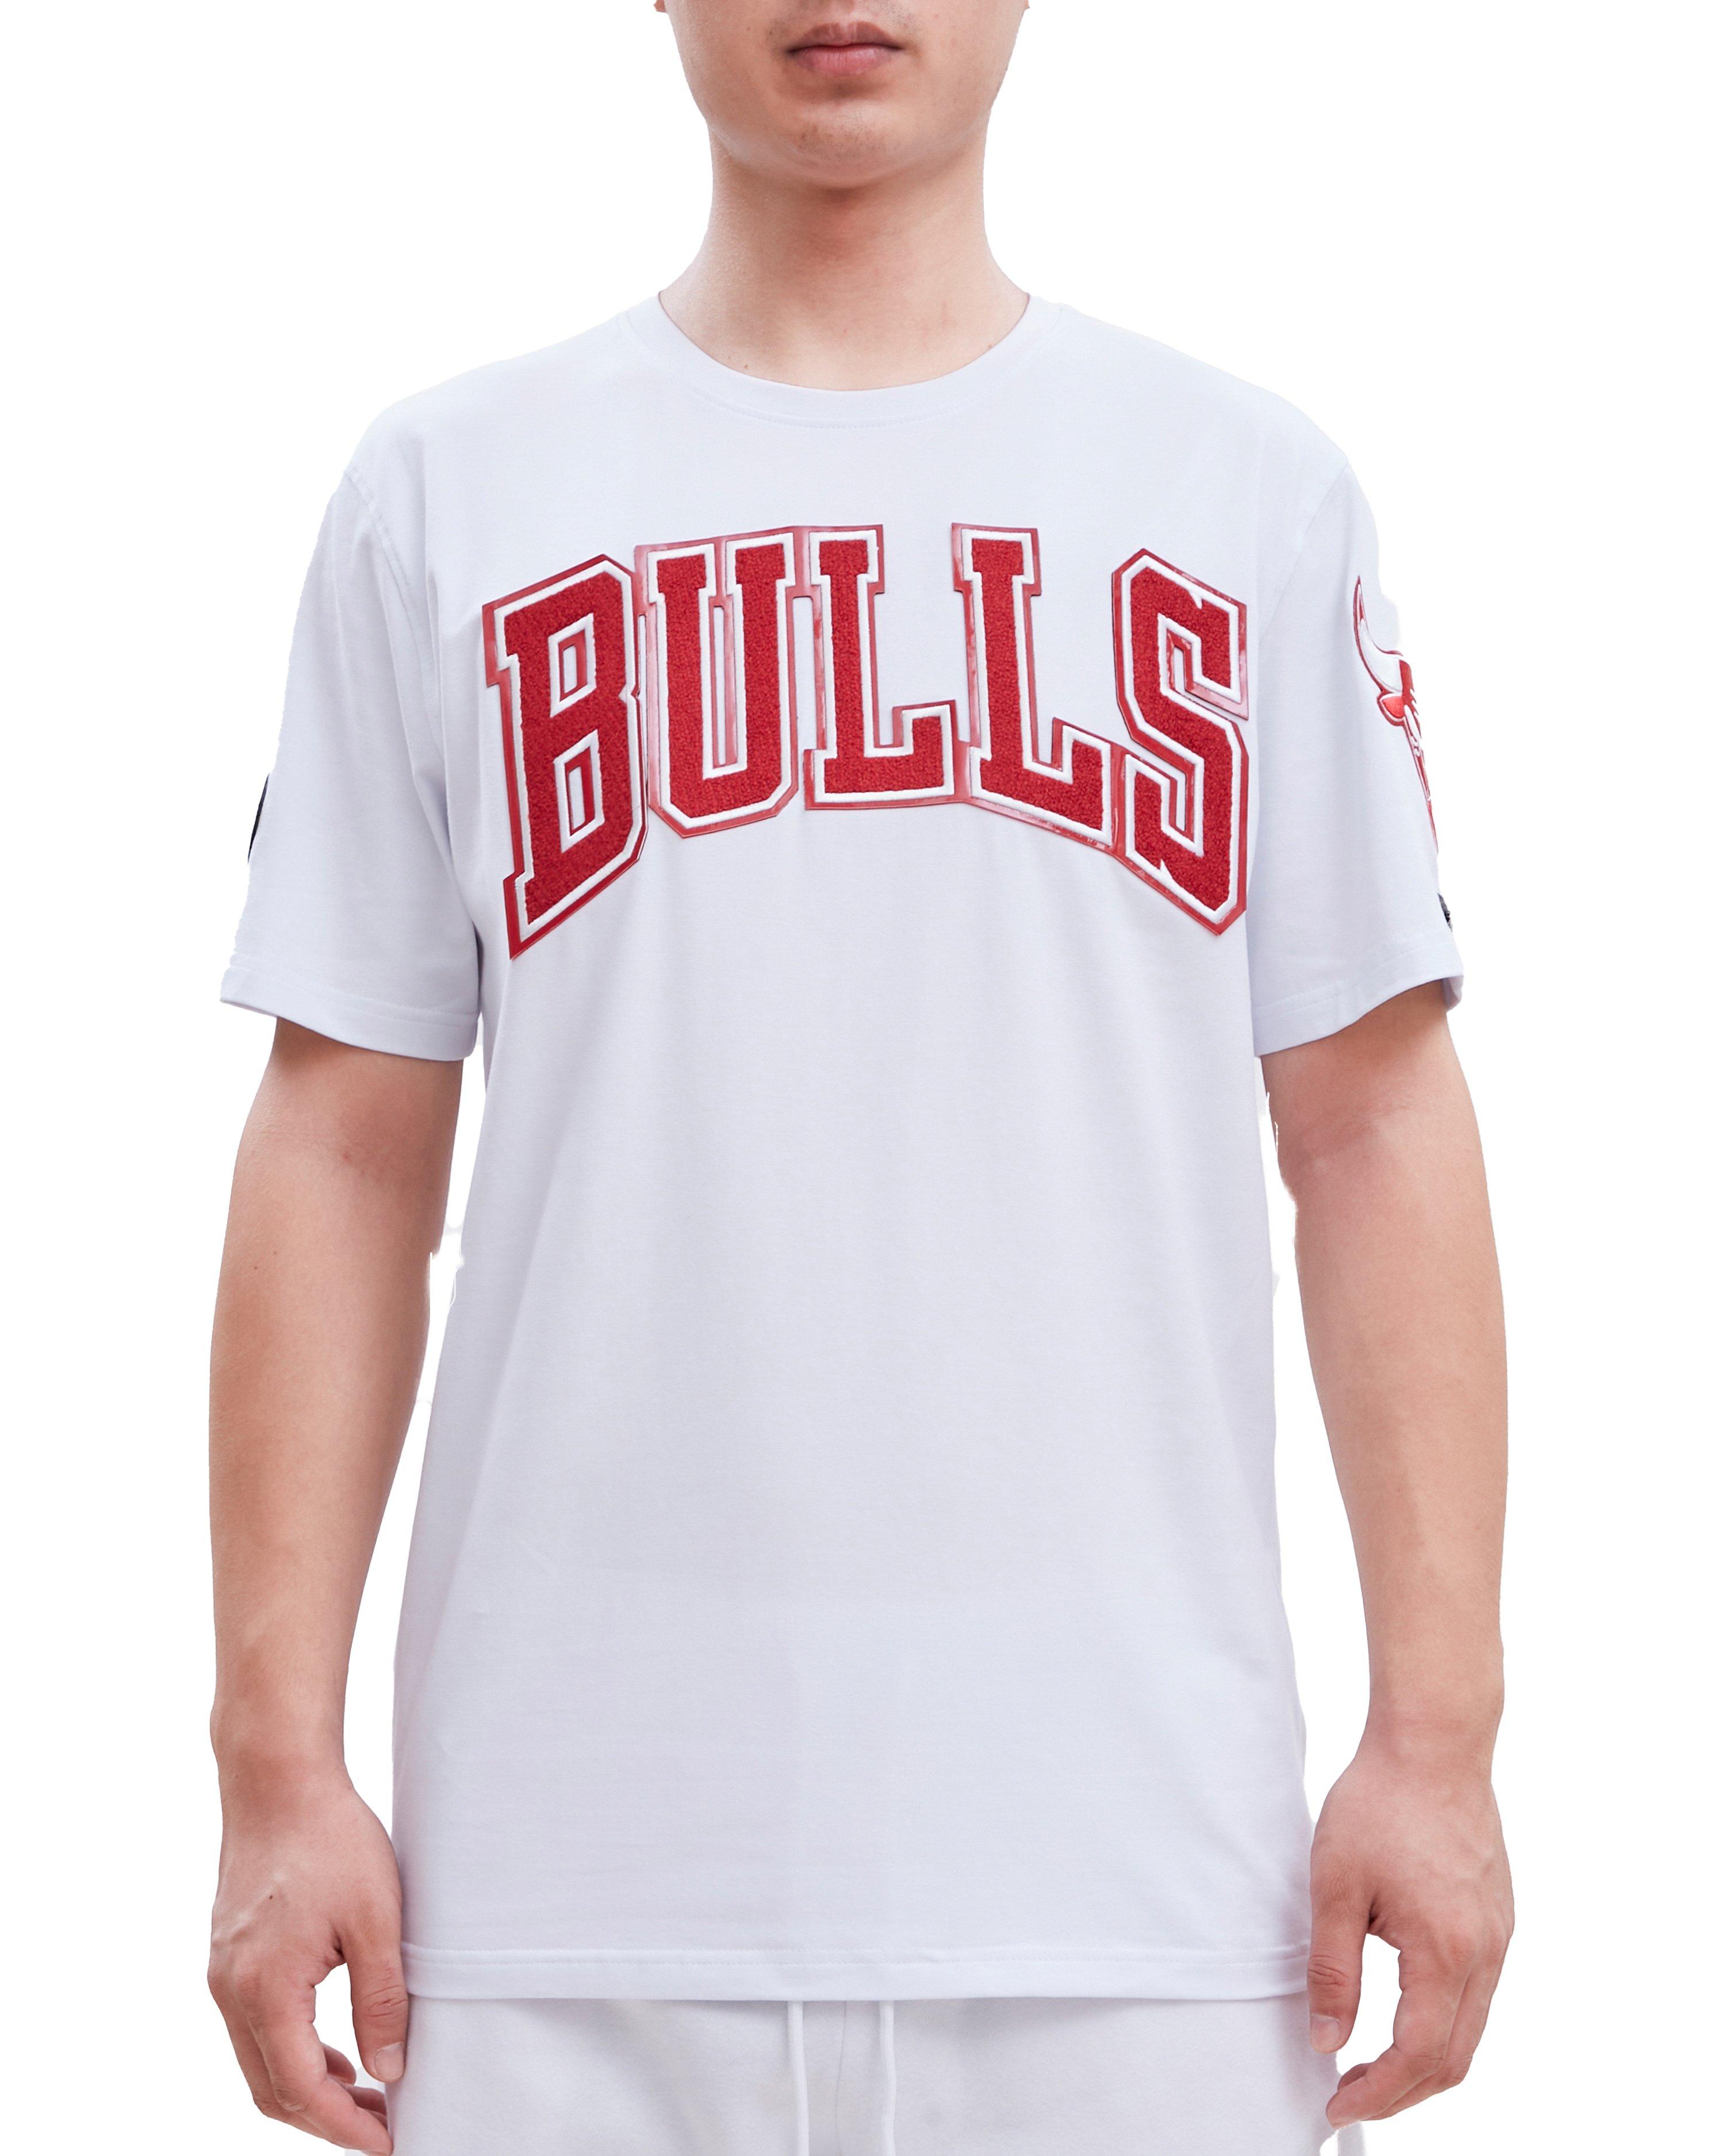 Cheap Price NBA Basketball Chicago Bulls Men's T-shirt 3D Short